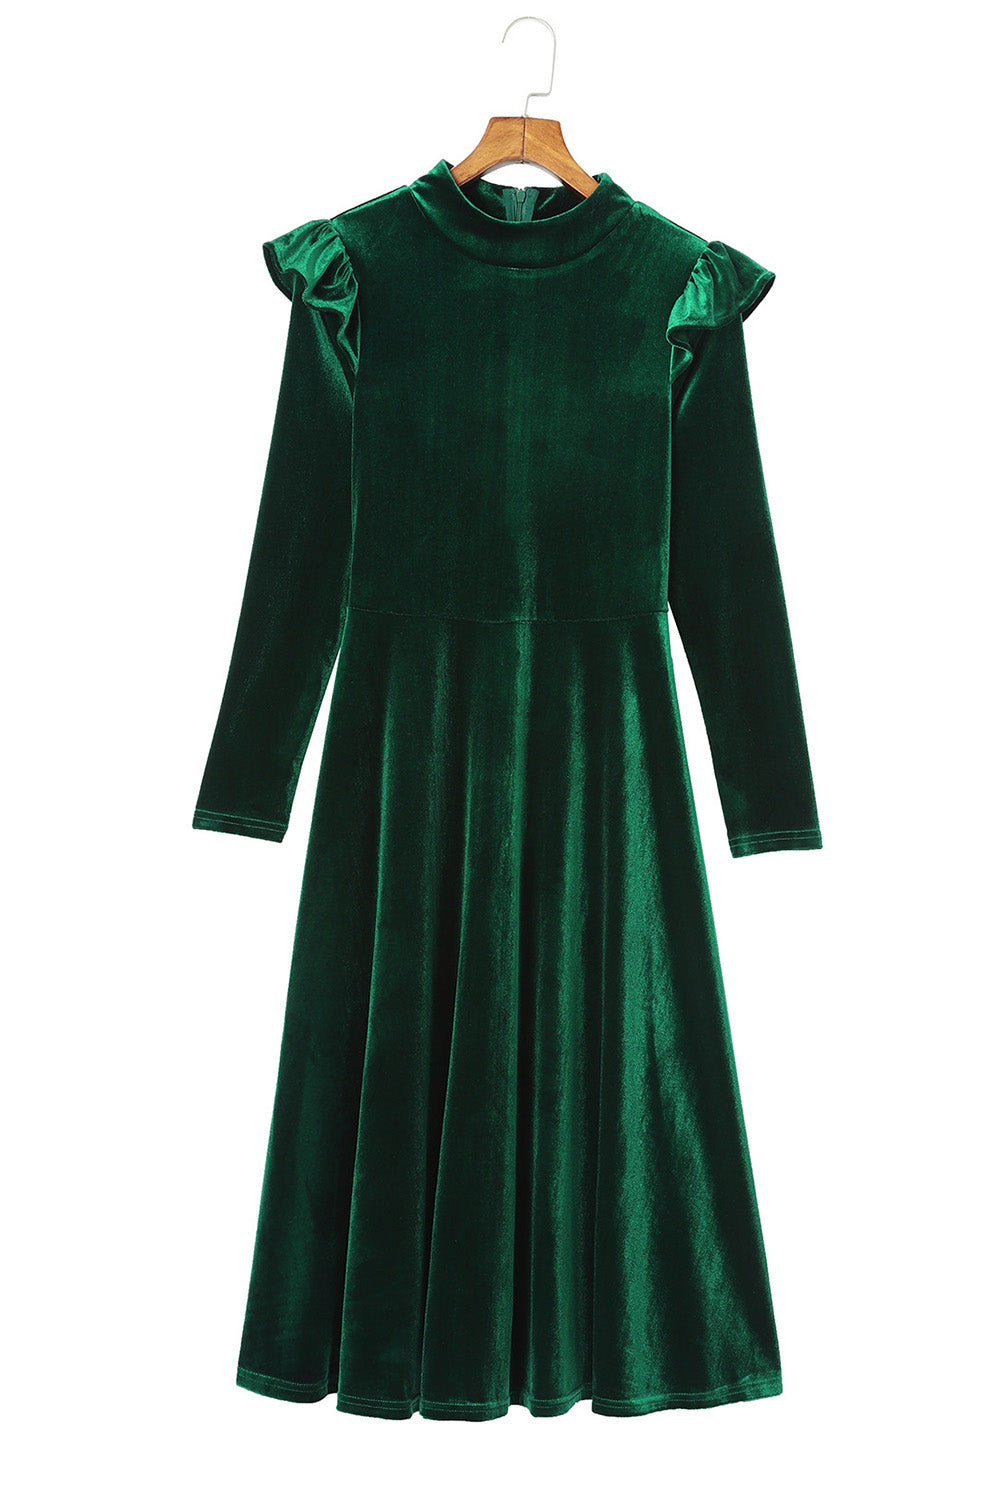 Green Frill Trim Long Sleeve Stand Neck Velvet Dress Dresses JT's Designer Fashion